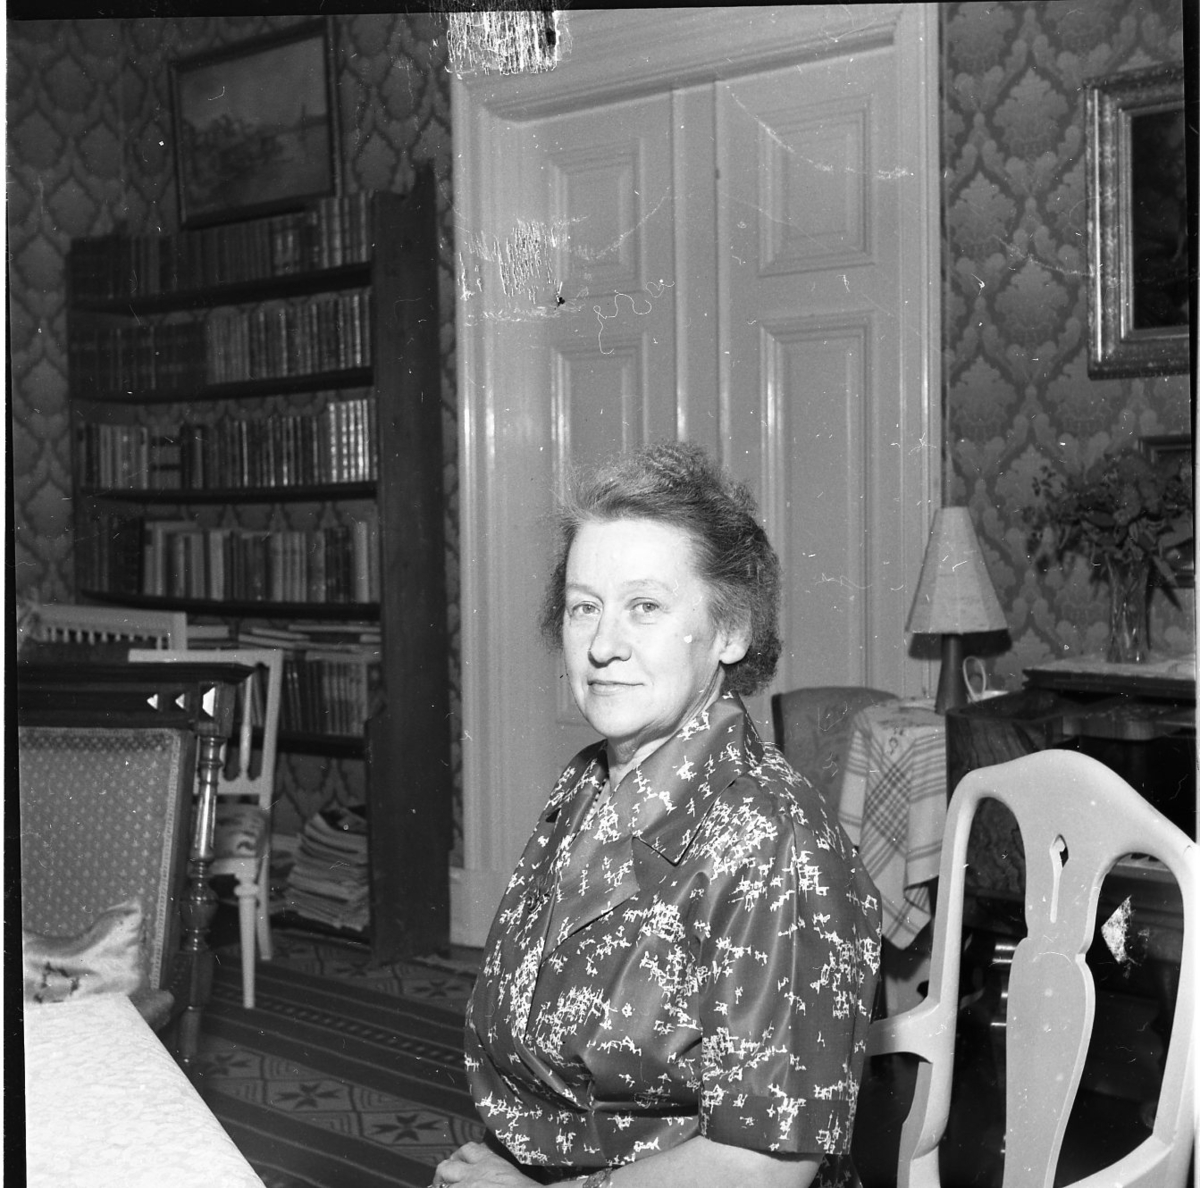 En kvinna sitter vid en matsalmöbel i en salong. I bakgrunden synsdubbeldörrar med speglar och bredvid dem står en bokhylla. Kvinnan har en kort frisyr och en mönstrad klänning